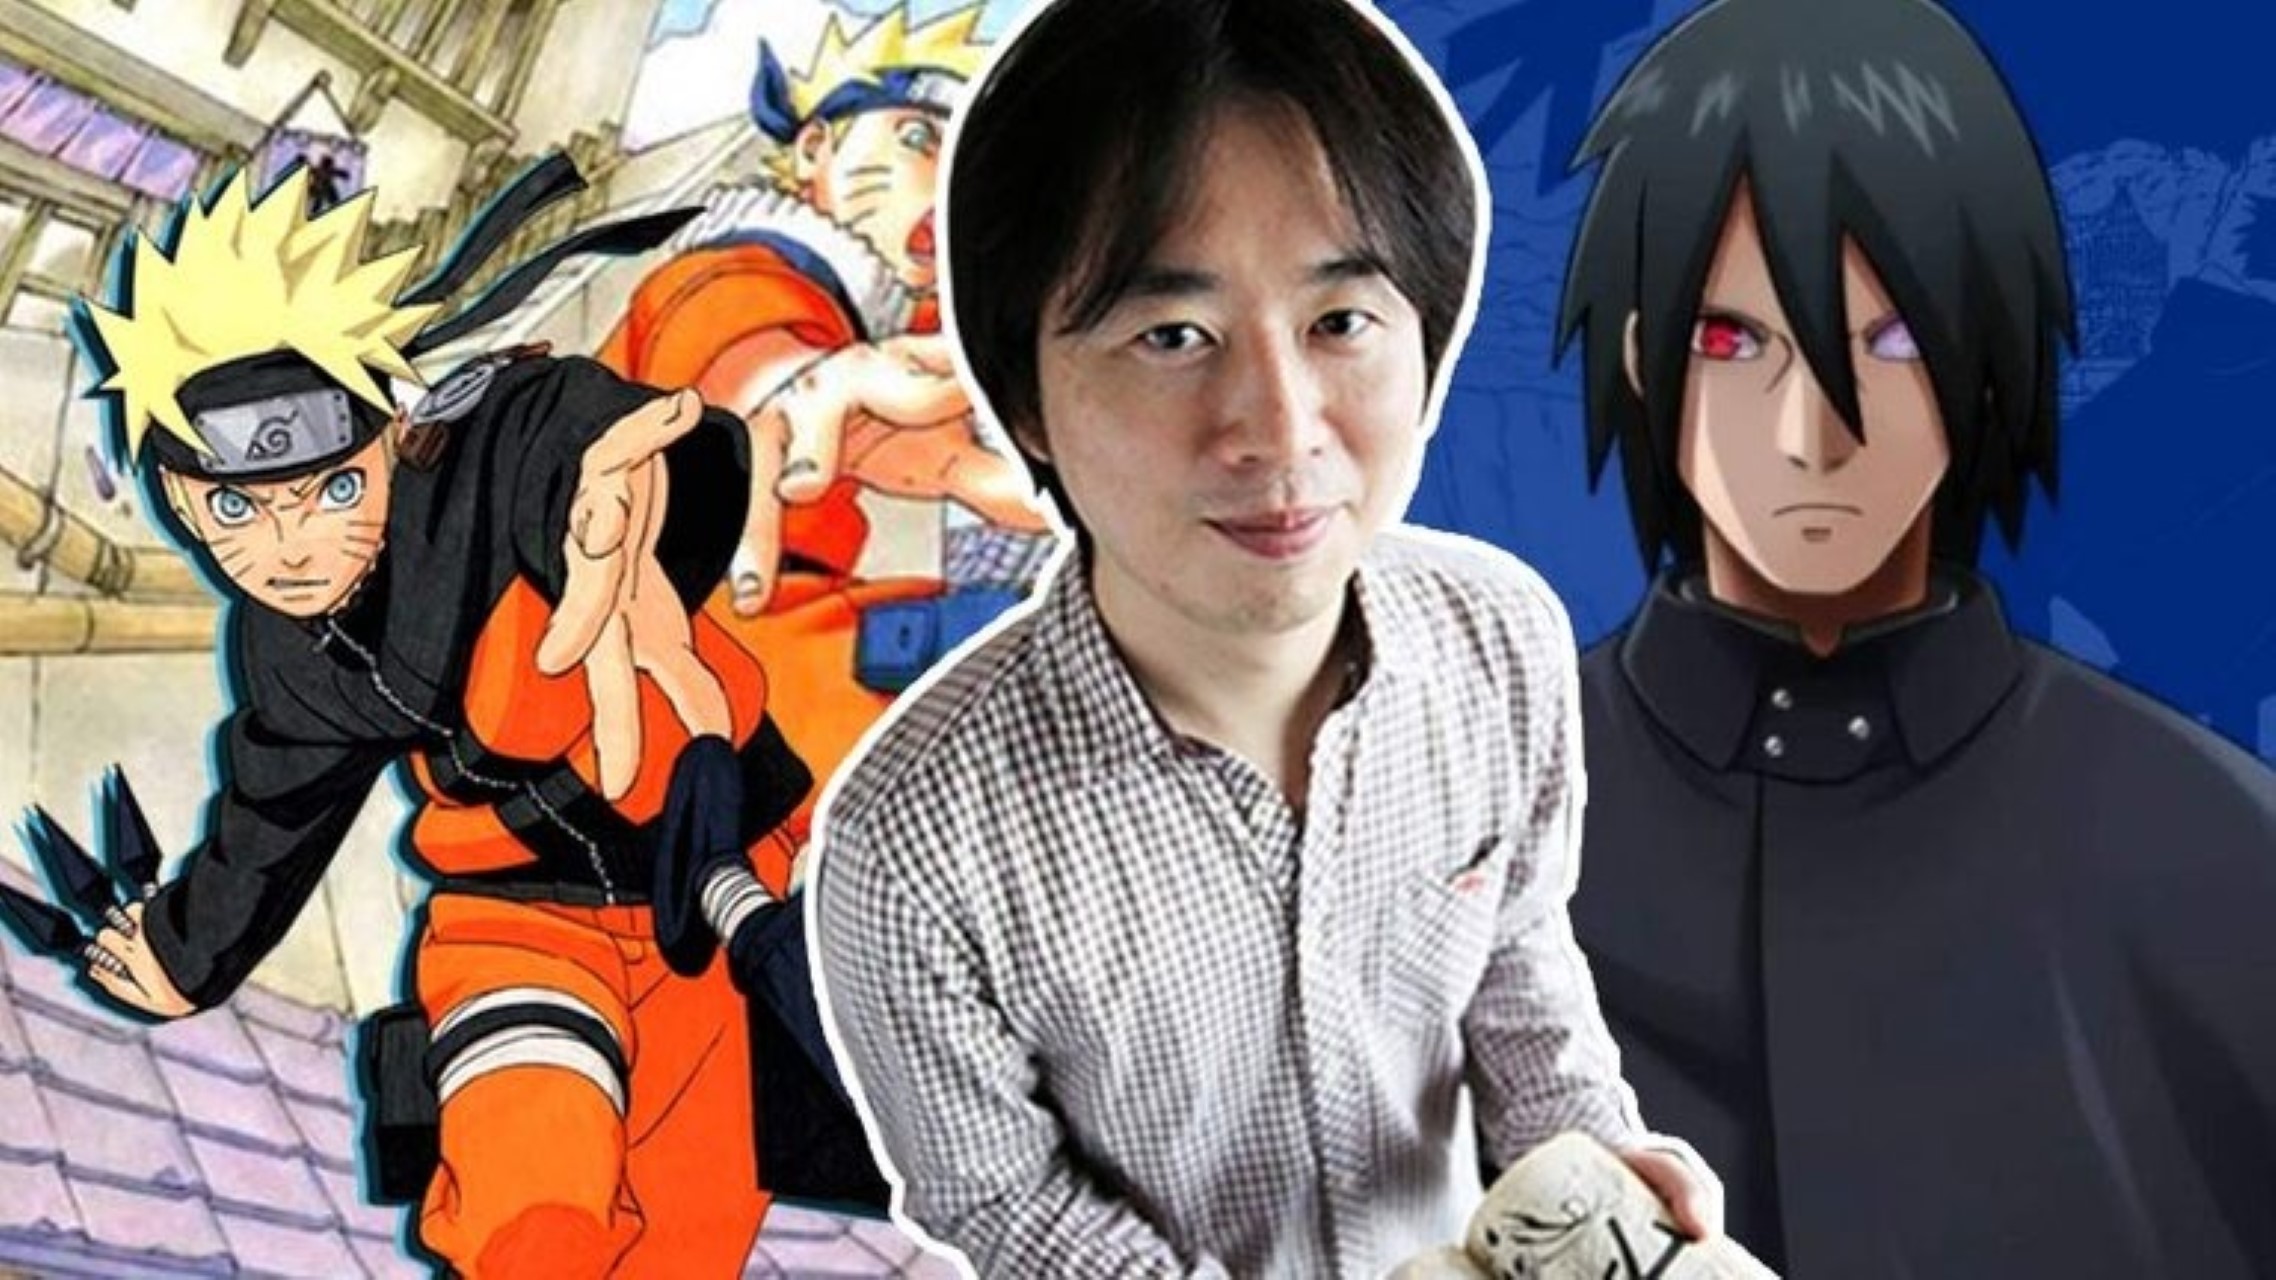  Autor de Naruto revela novidades sobre o futuro da  série